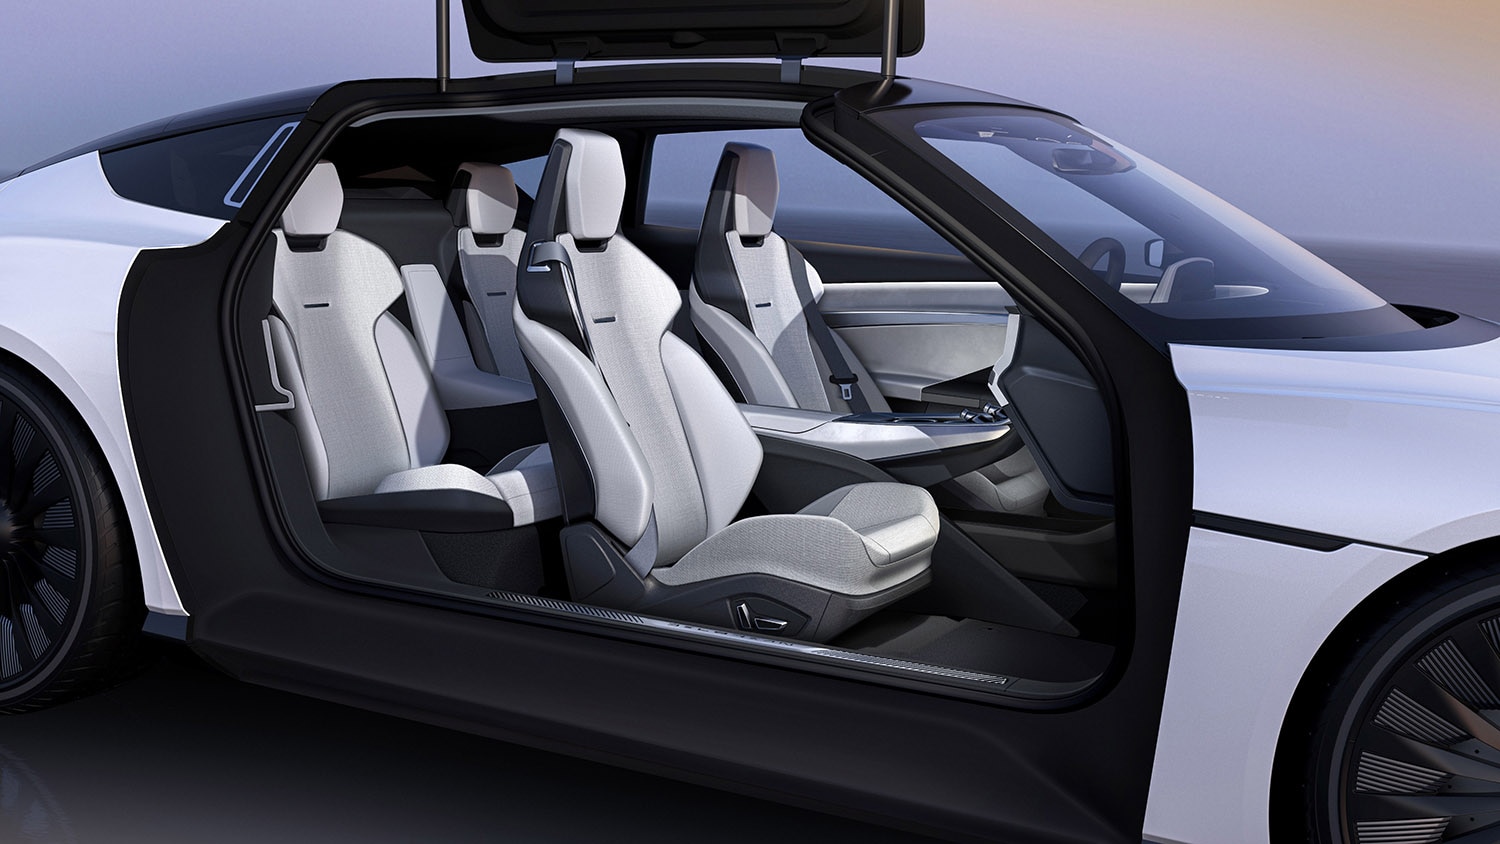 Delorean Alpha5 white interior, seats